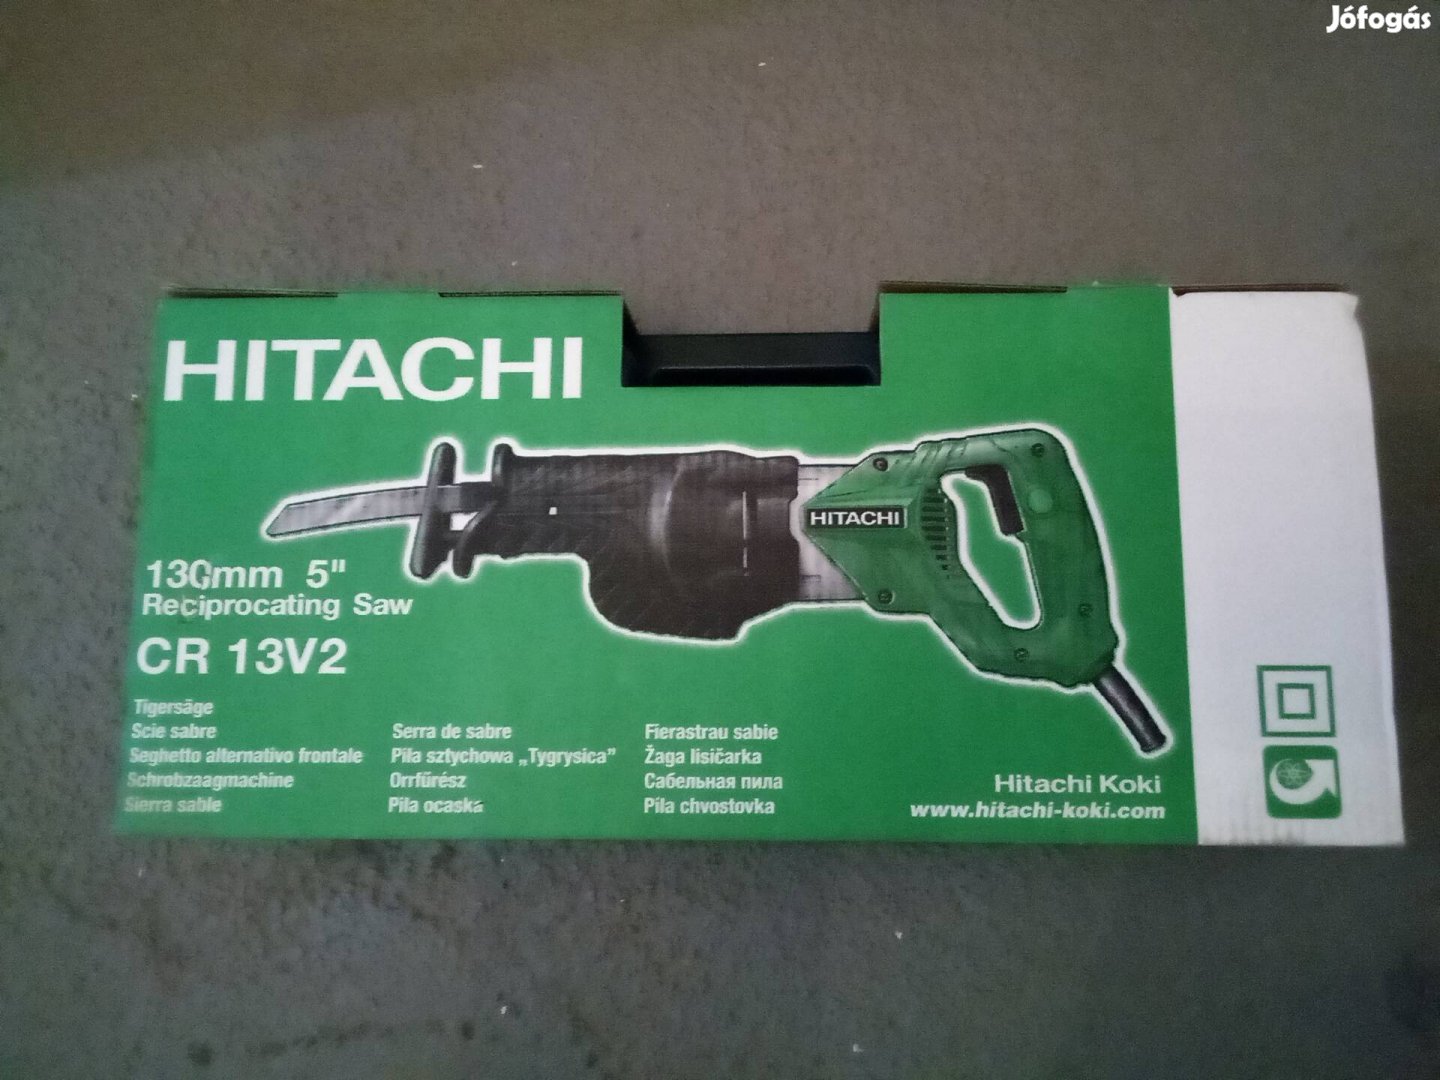 Hitachi Hikoki elektromos orrfűrész CR13 2 szúrófűrész 